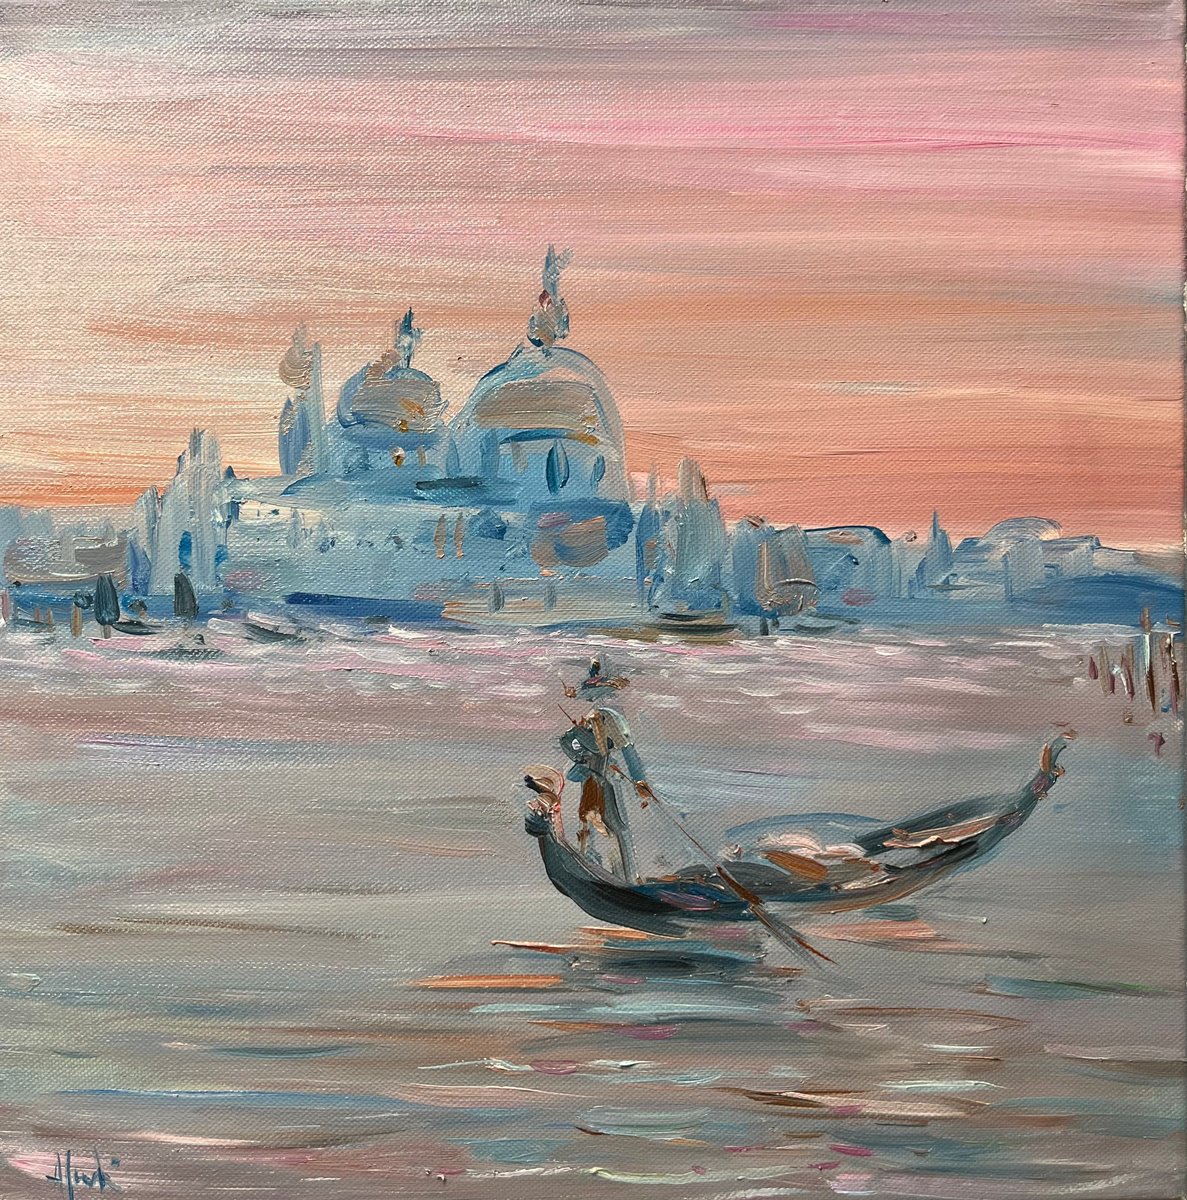 Dreamy Venice , 2022 by Altin Furxhi